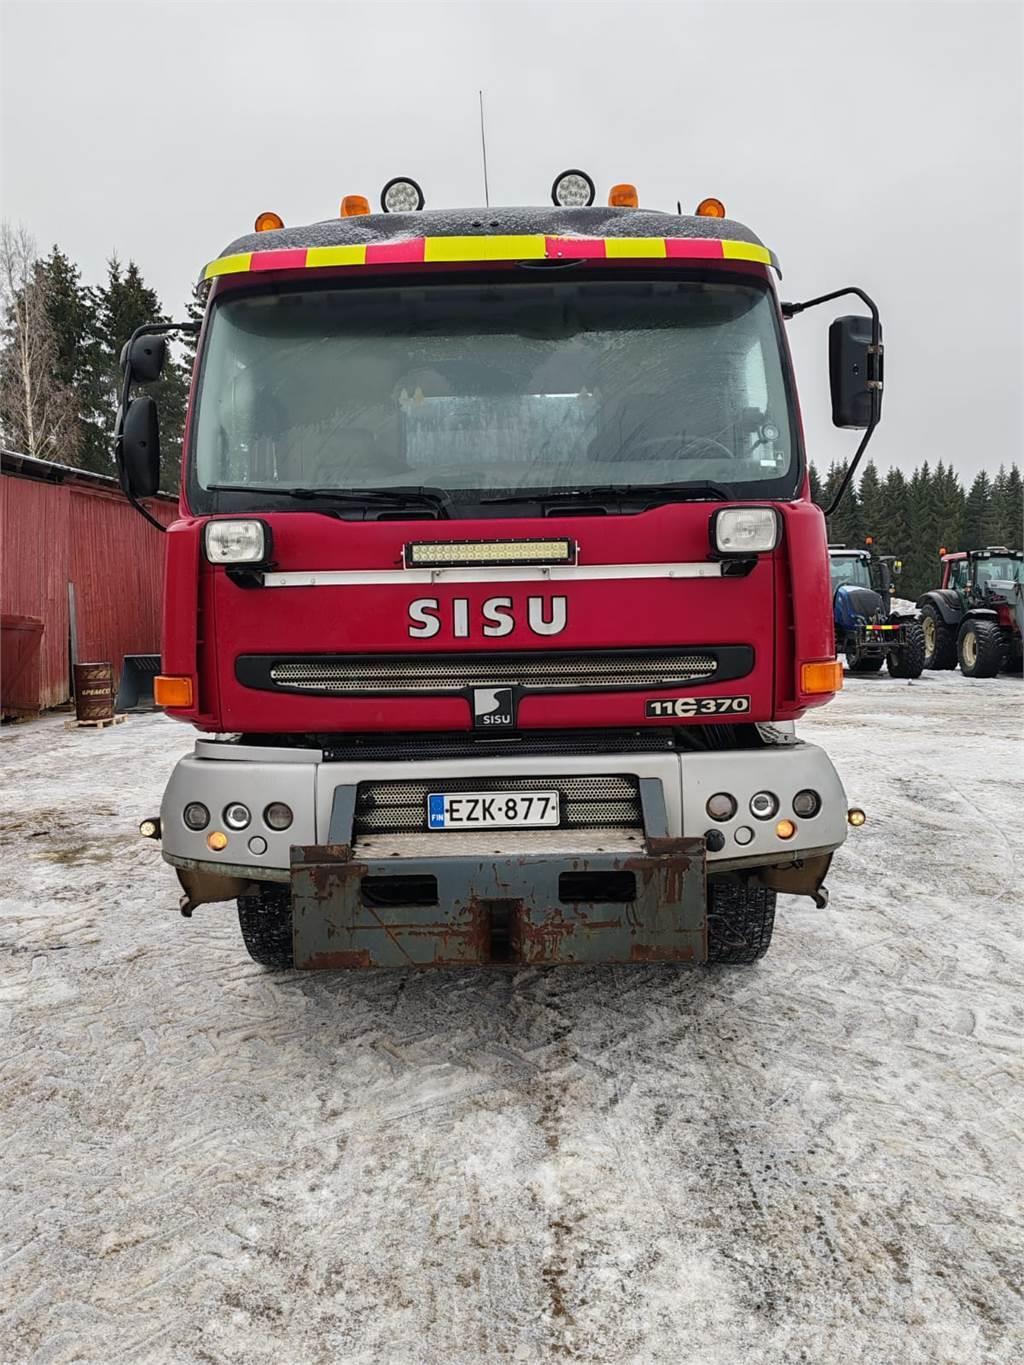 Sisu E11 370 Cable lift demountable trucks